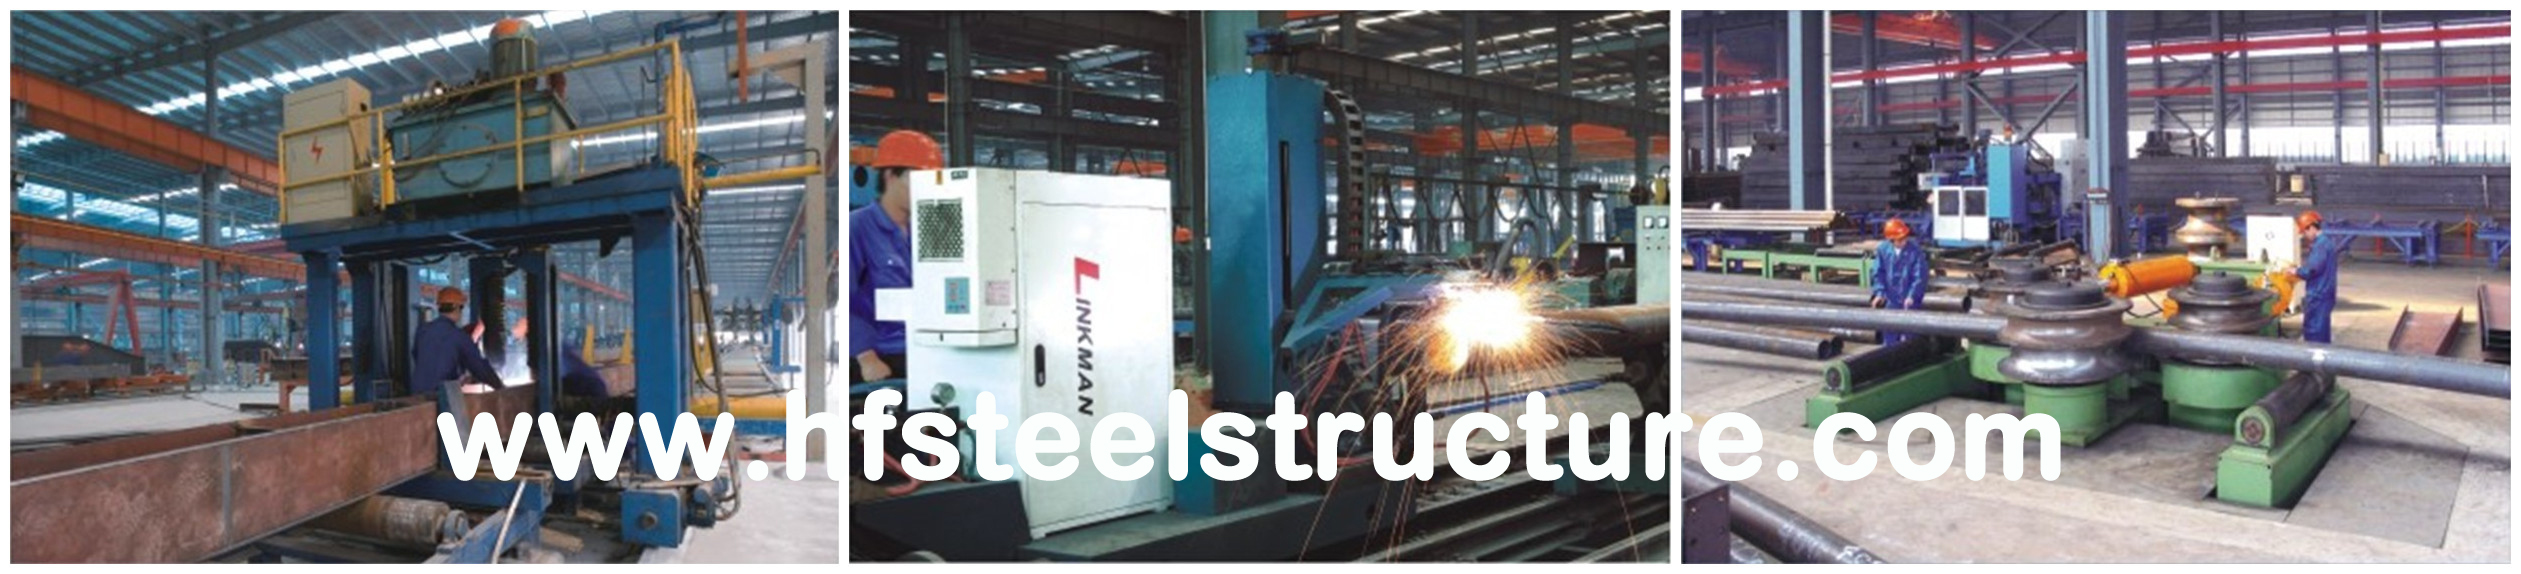 Termine las fabricaciones del acero estructural para el edificio de acero industrial